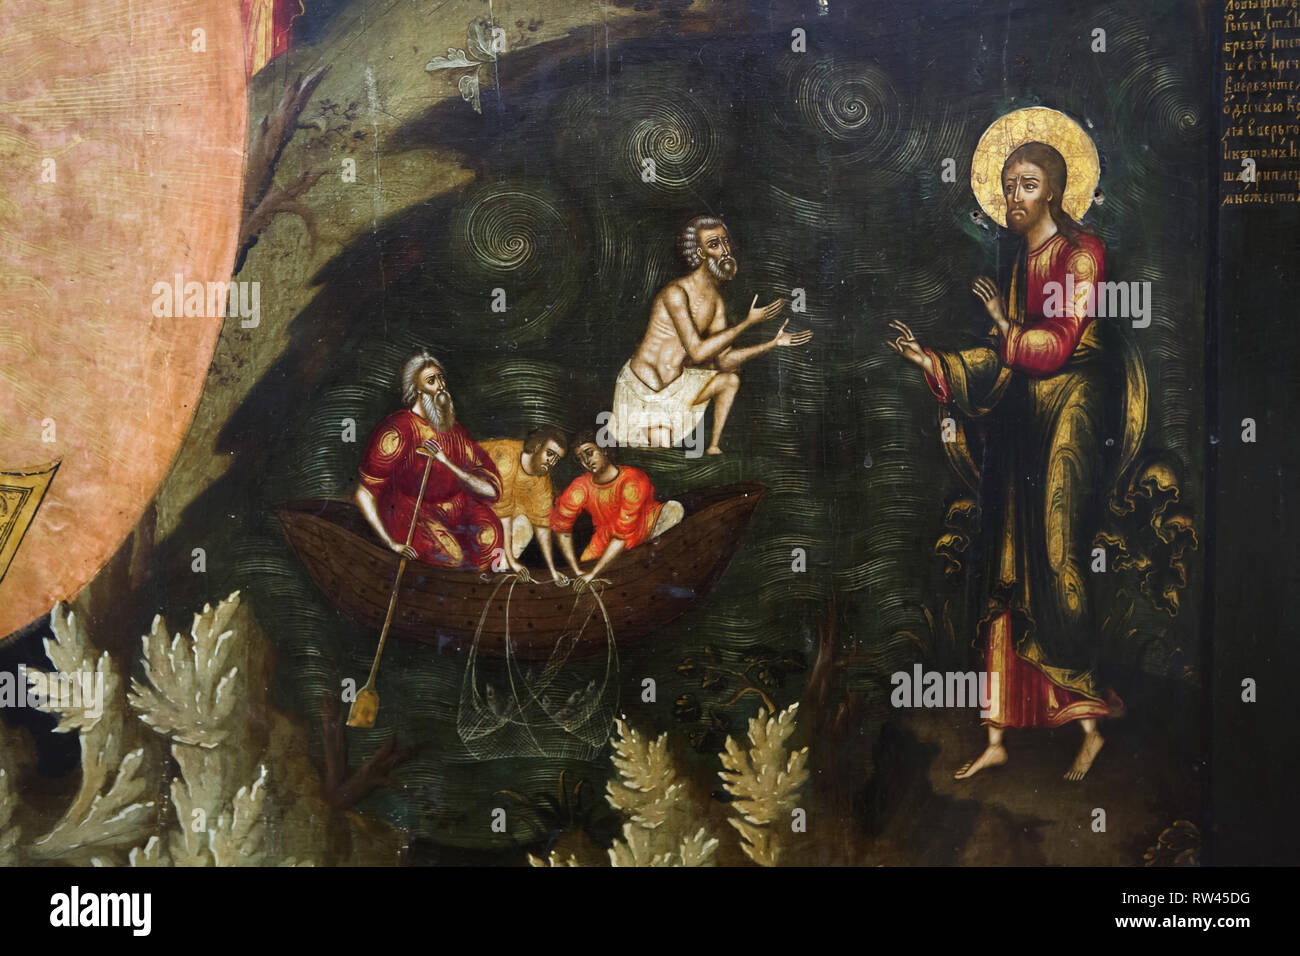 Jésus Christ et la pêche miraculeuse de poissons dans la mer de Galilée décrite dans le détail de l'icône russe de l'école de peinture icône Yaroslavl daté de la seconde moitié du 17e siècle de l'Église du prophète Élie à Yaroslavl, maintenant exposée dans le musée de Yaroslavl Yaroslavl, préserver dans la Russie. La deuxième pêche miraculeuse de 153 poissons d'après John est représenté ici. Banque D'Images